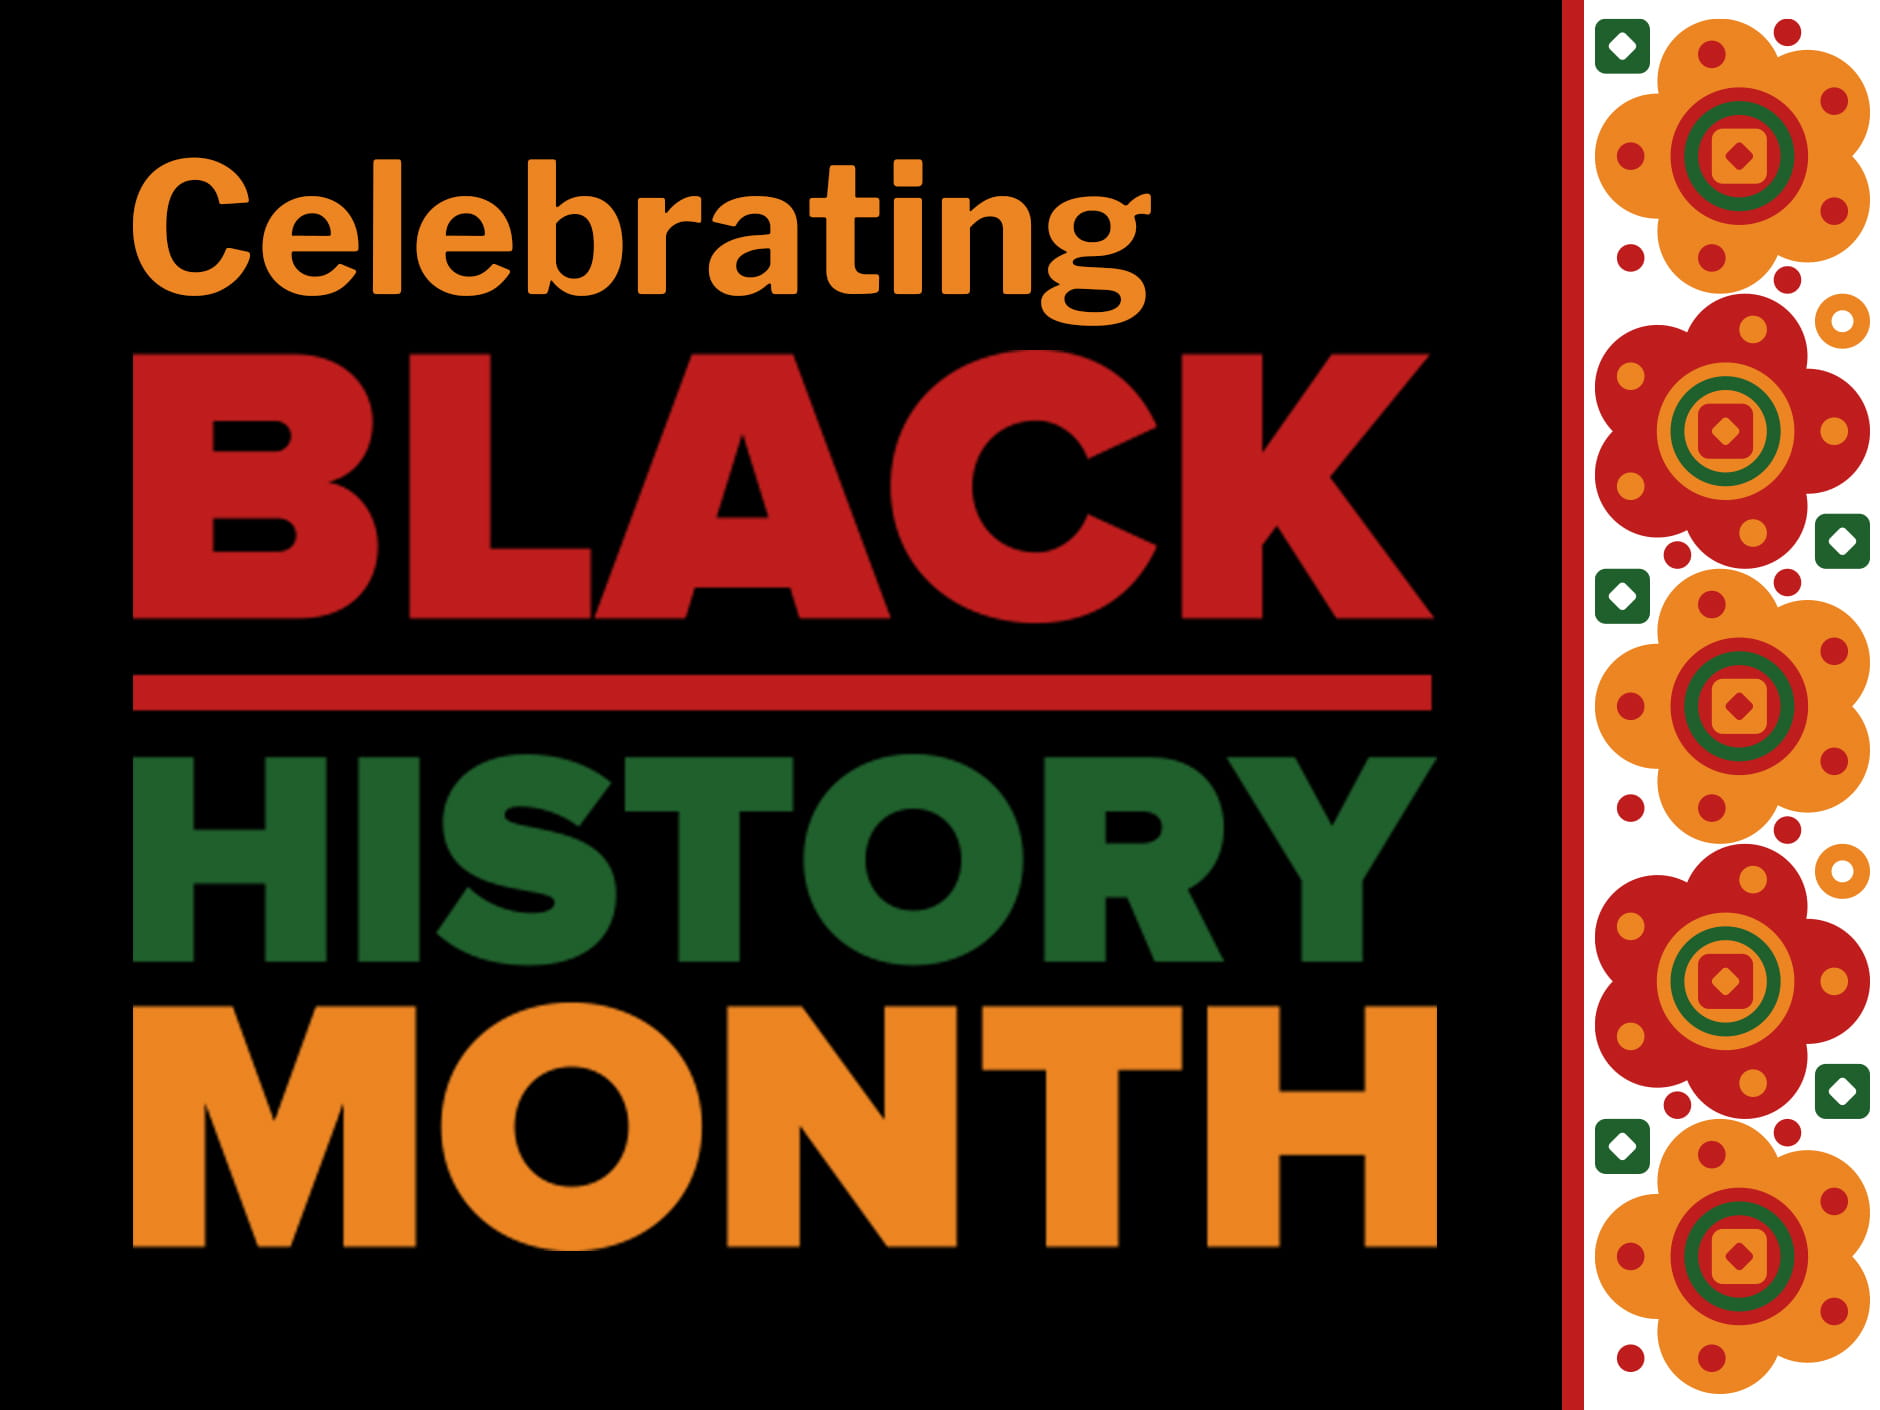 A Cross-Community Black History Month Celebration